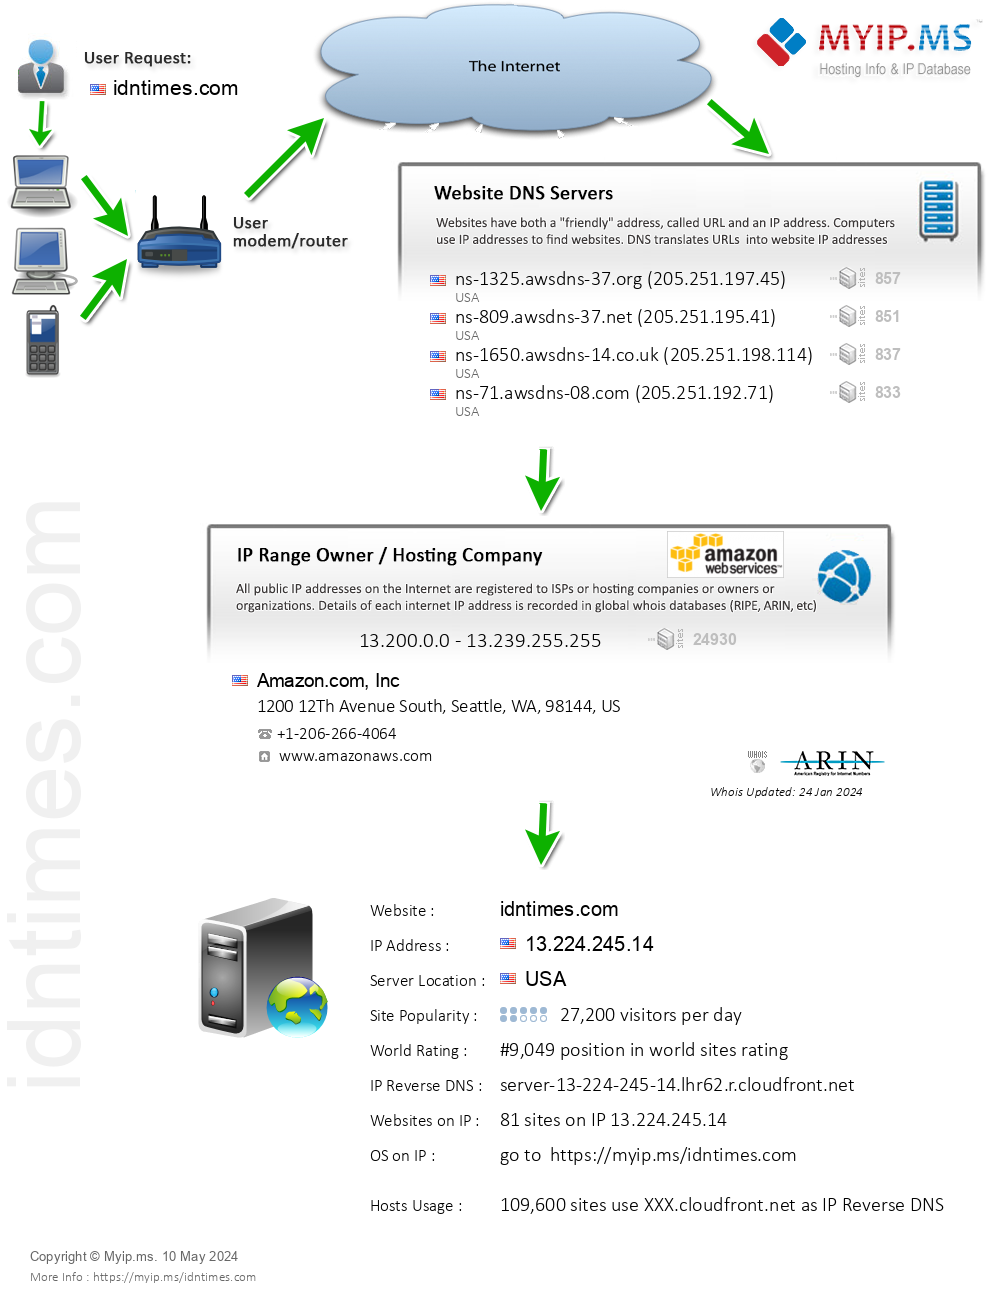 Idntimes.com - Website Hosting Visual IP Diagram